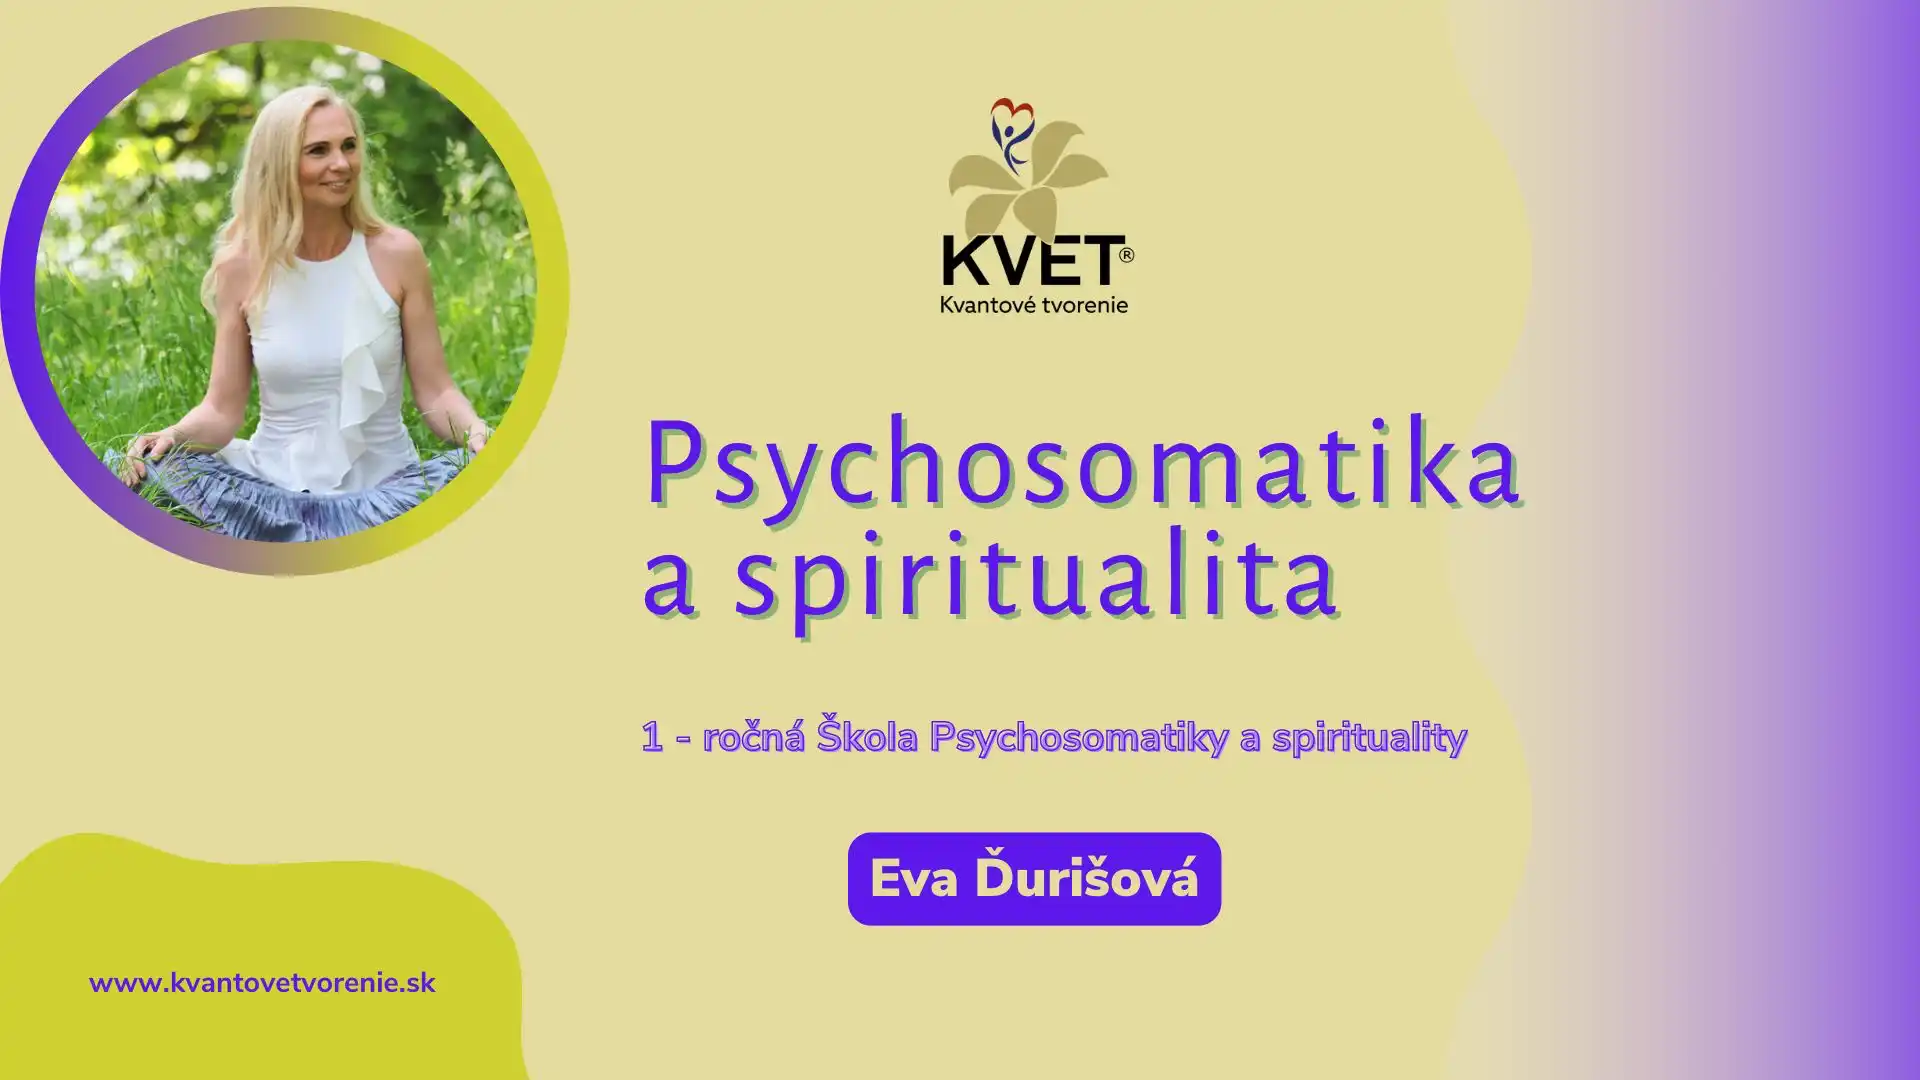 Pychosomatika a spiritualita – 16:9 na web